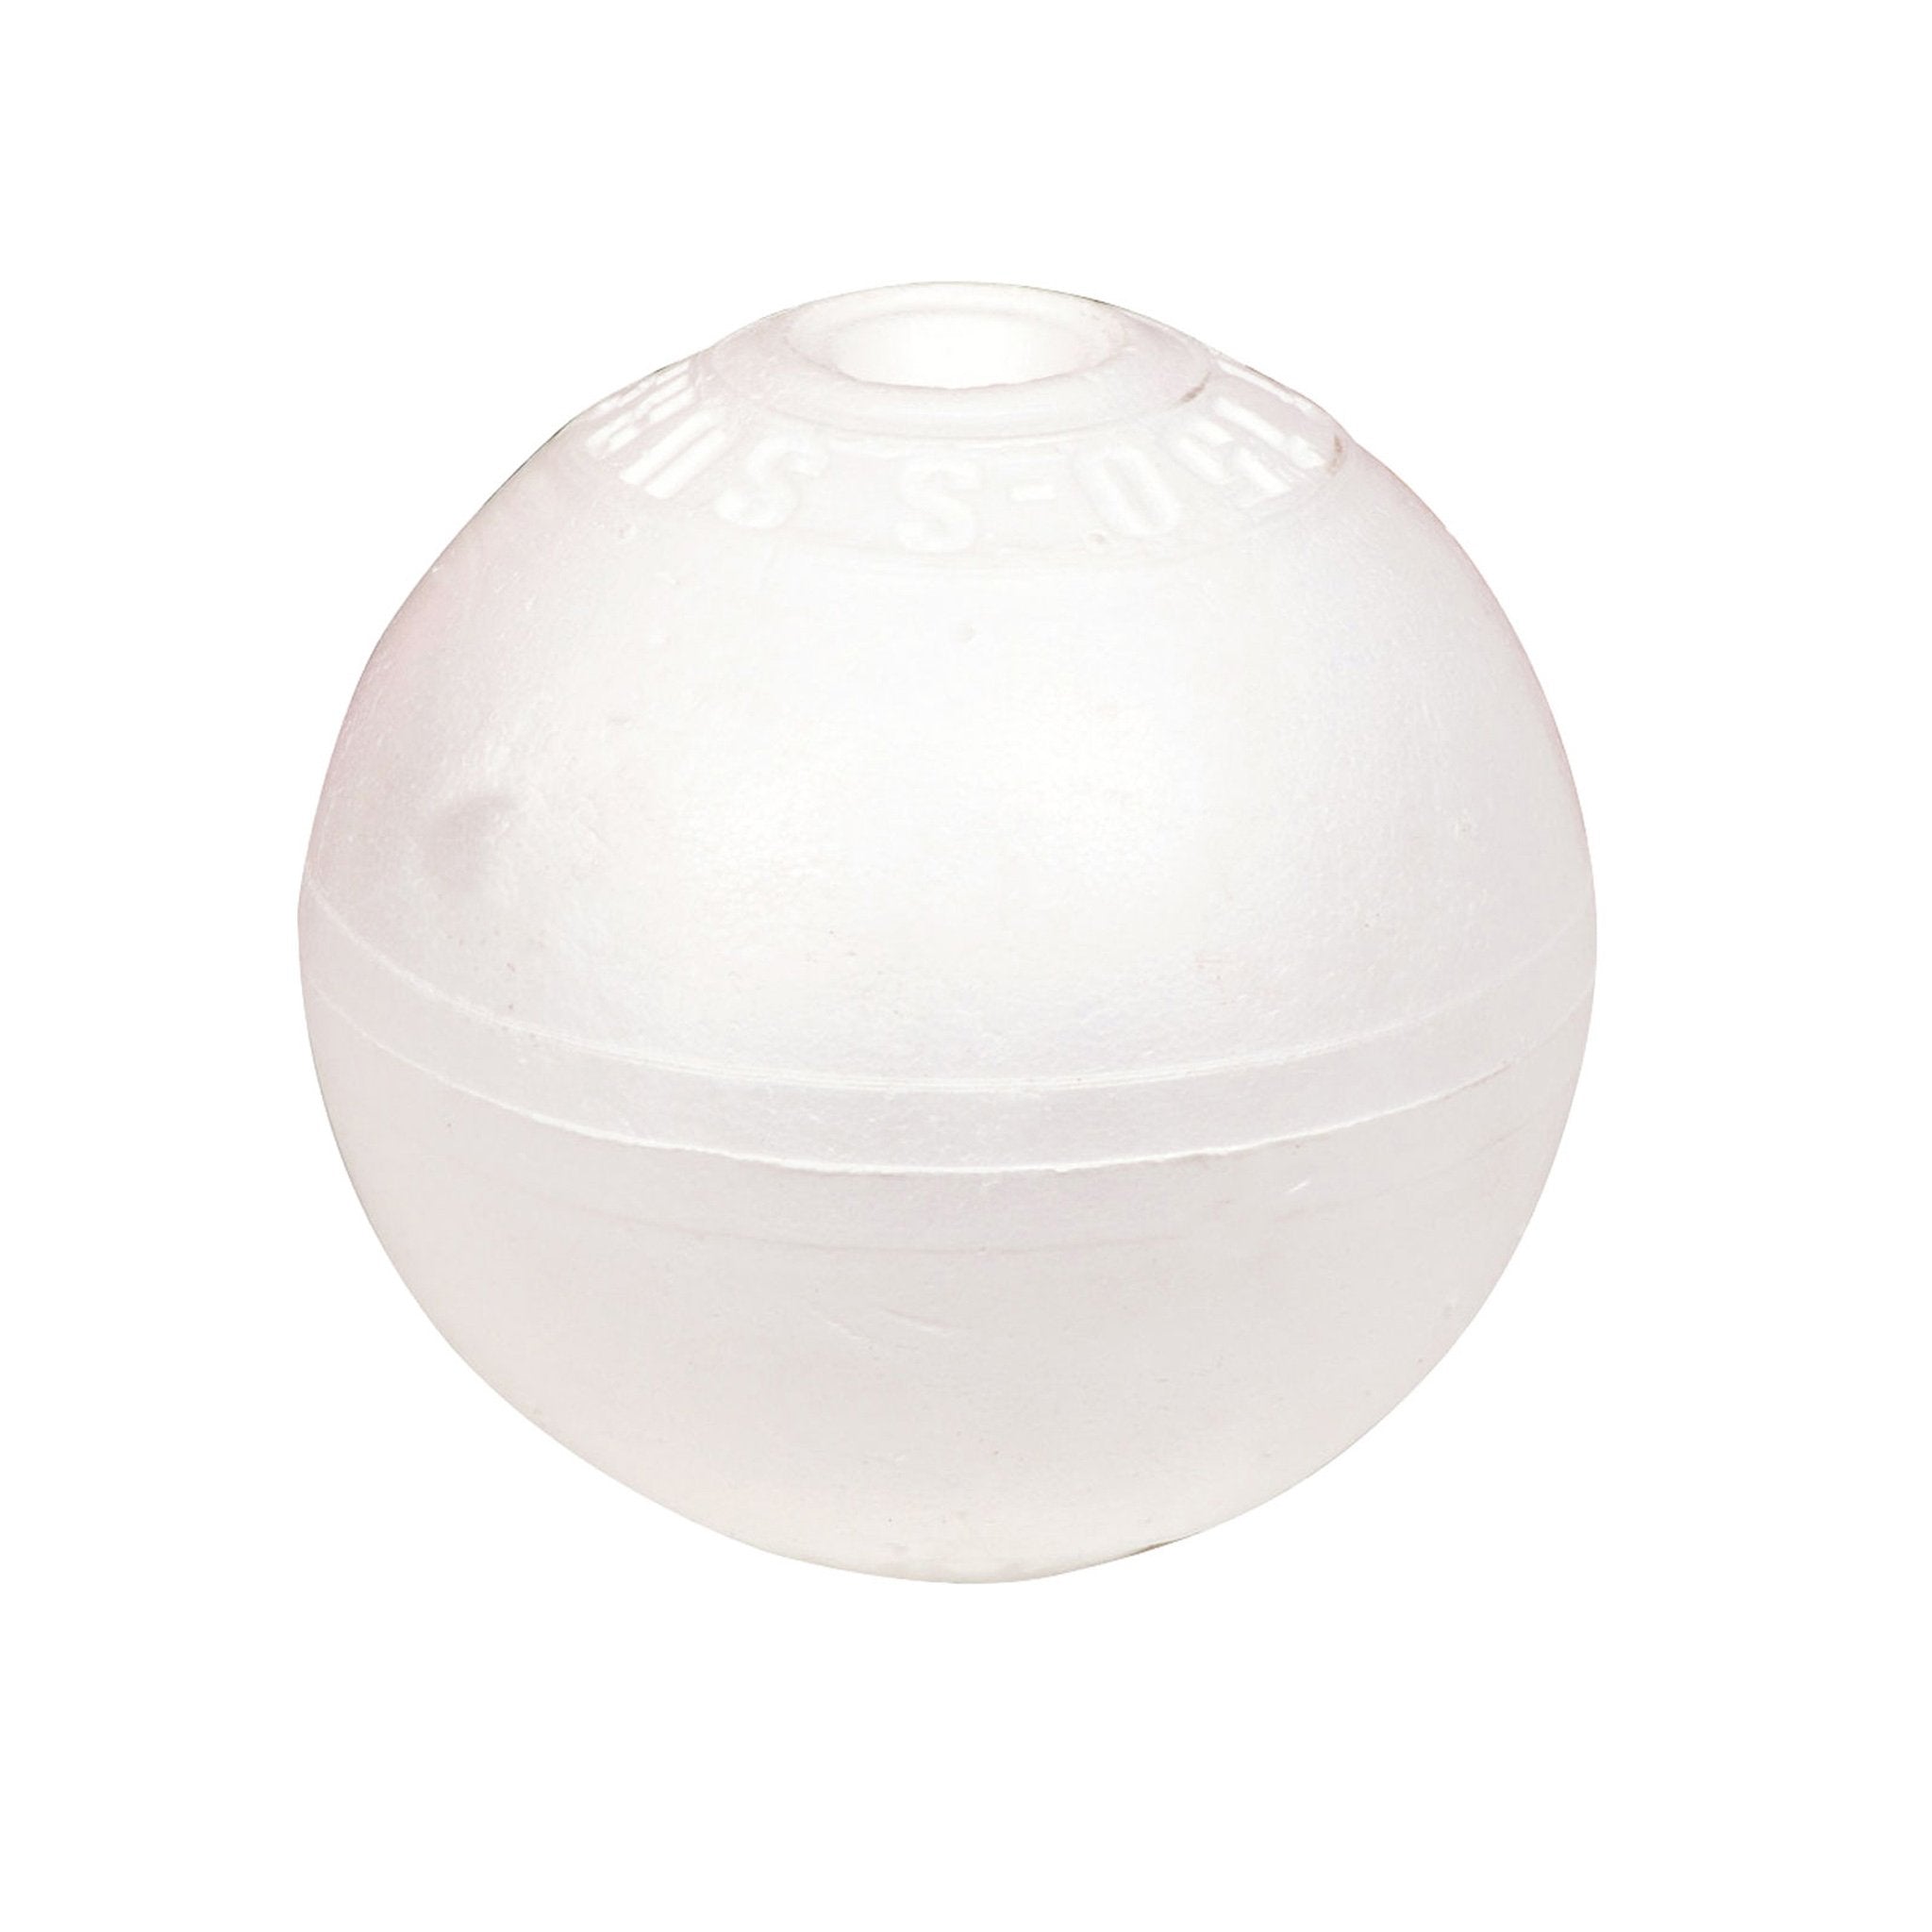 Net Factory Crab Pot Float - 10cm White Polystyrene - Jarvis Walker –  Jarvis Walker Brands